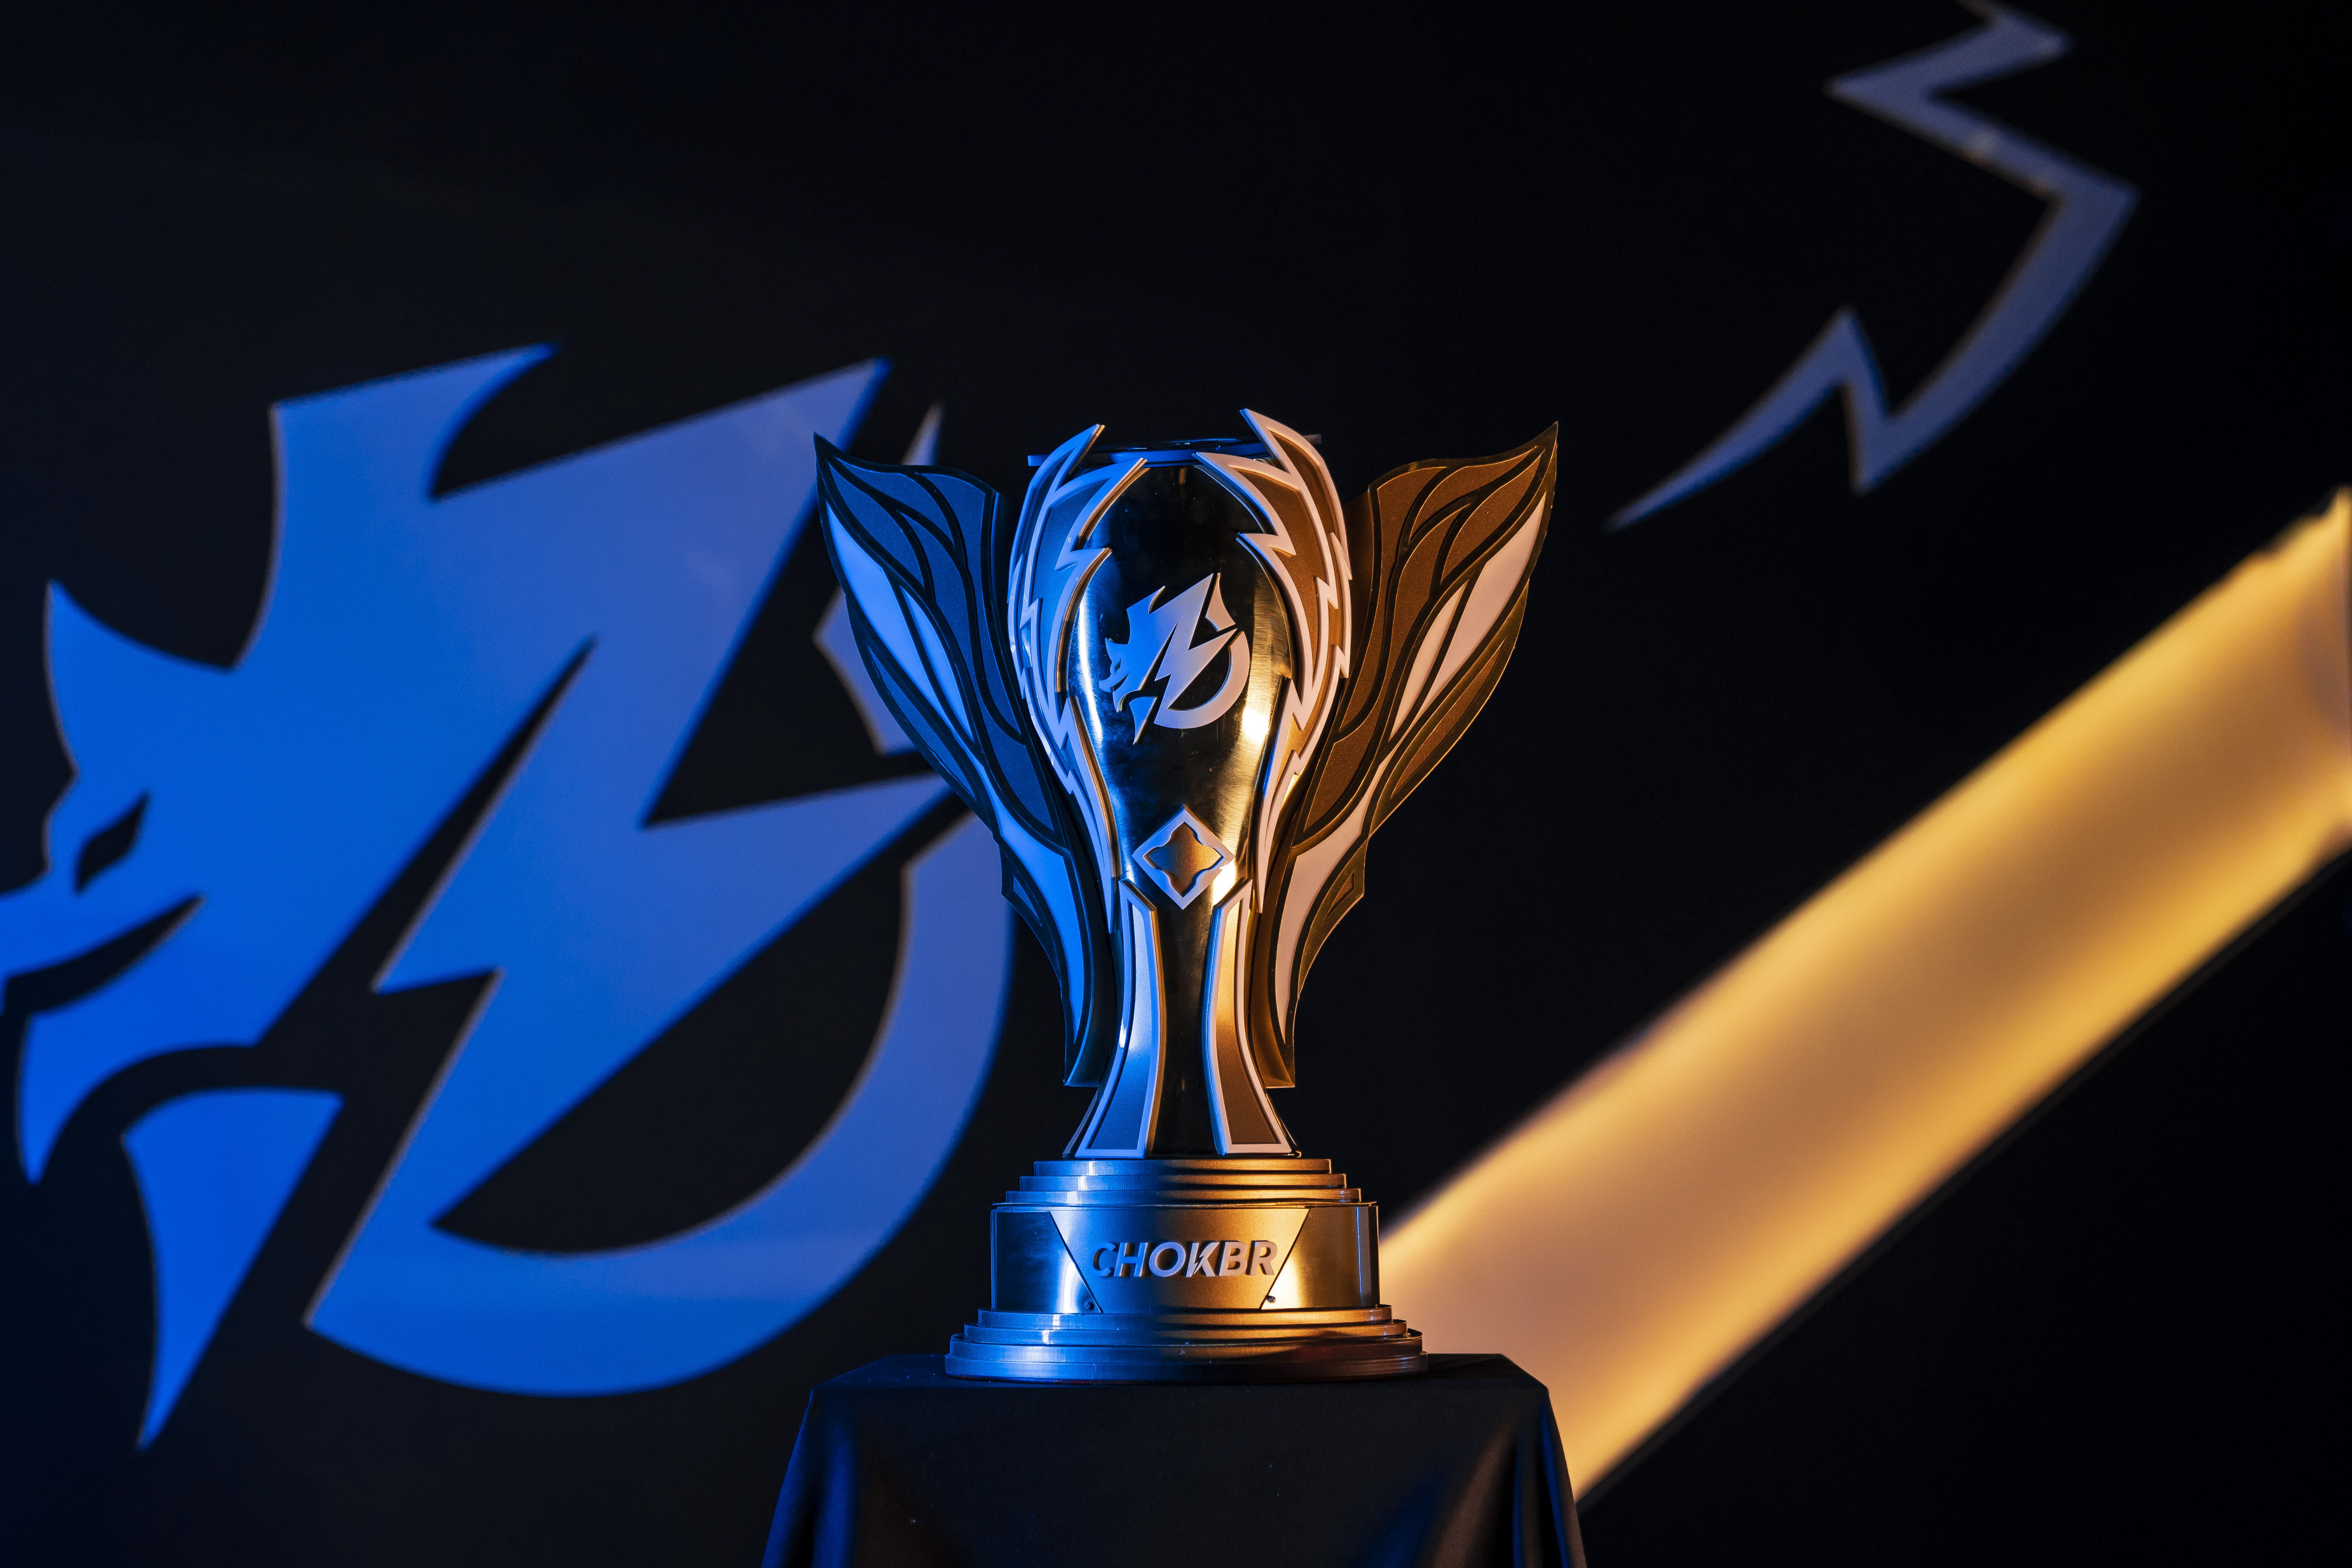 FNCS Global Championship 2023: duplas, formato, premiação e mais